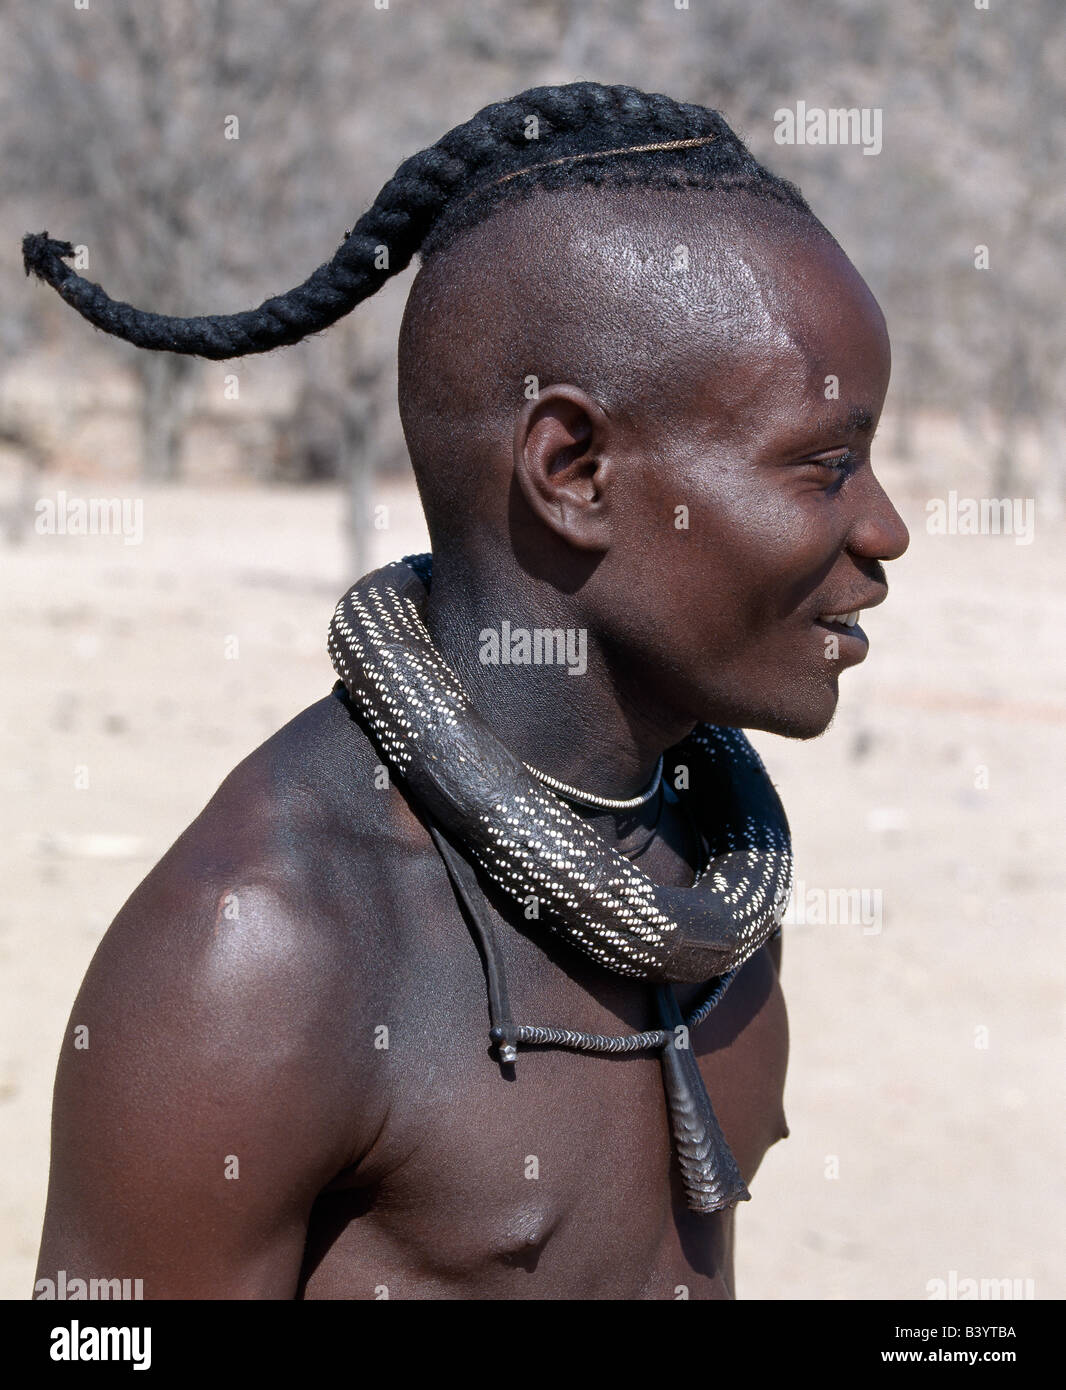 La Namibie, Kaokoland, Epupa. Un jeune Himba a son style de cheveux en une longue natte, connu comme ondatu. Une fois marié, il va diviser le ondatu en deux tresses et les garder couverts. Son blanc-beaded necklace, ombwari, auront été faites pour lui par sa mère. Suspendu à ses petits collier est une corne d'antilope.Les Himbas Herero Bantu francophone sont des nomades qui vivent dans les conditions difficiles, sec mais très beau paysage de la nord-ouest de la Namibie. Banque D'Images